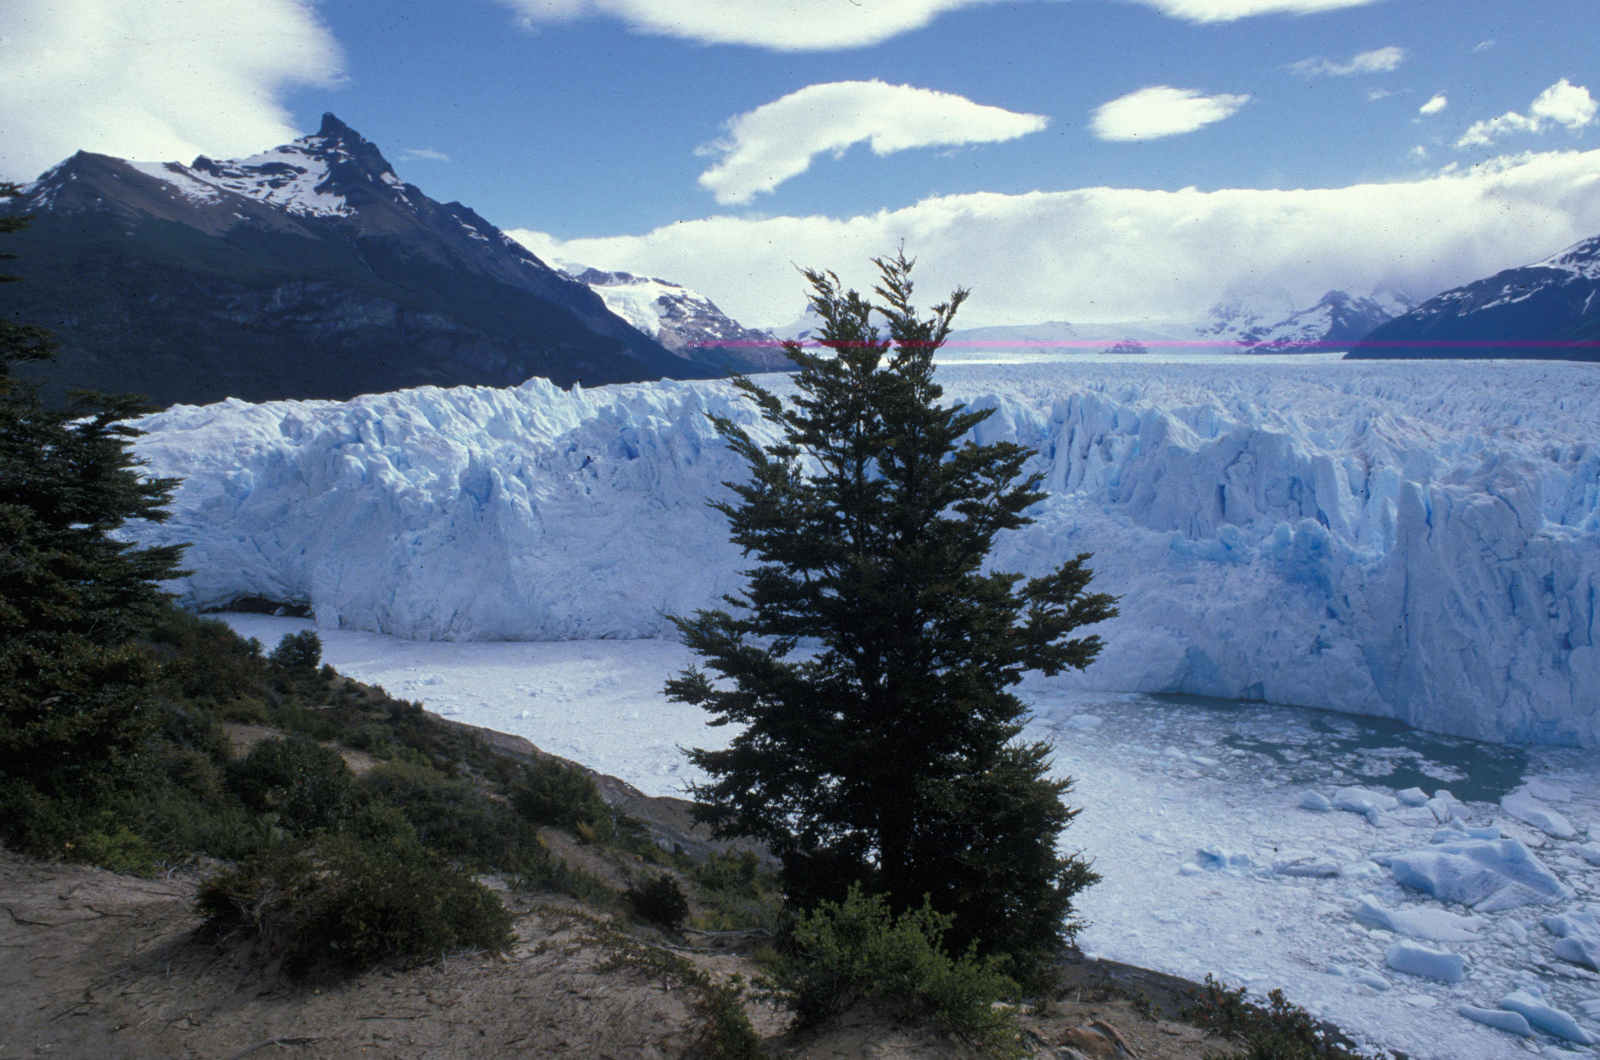 Perito Moreno-Gletscher